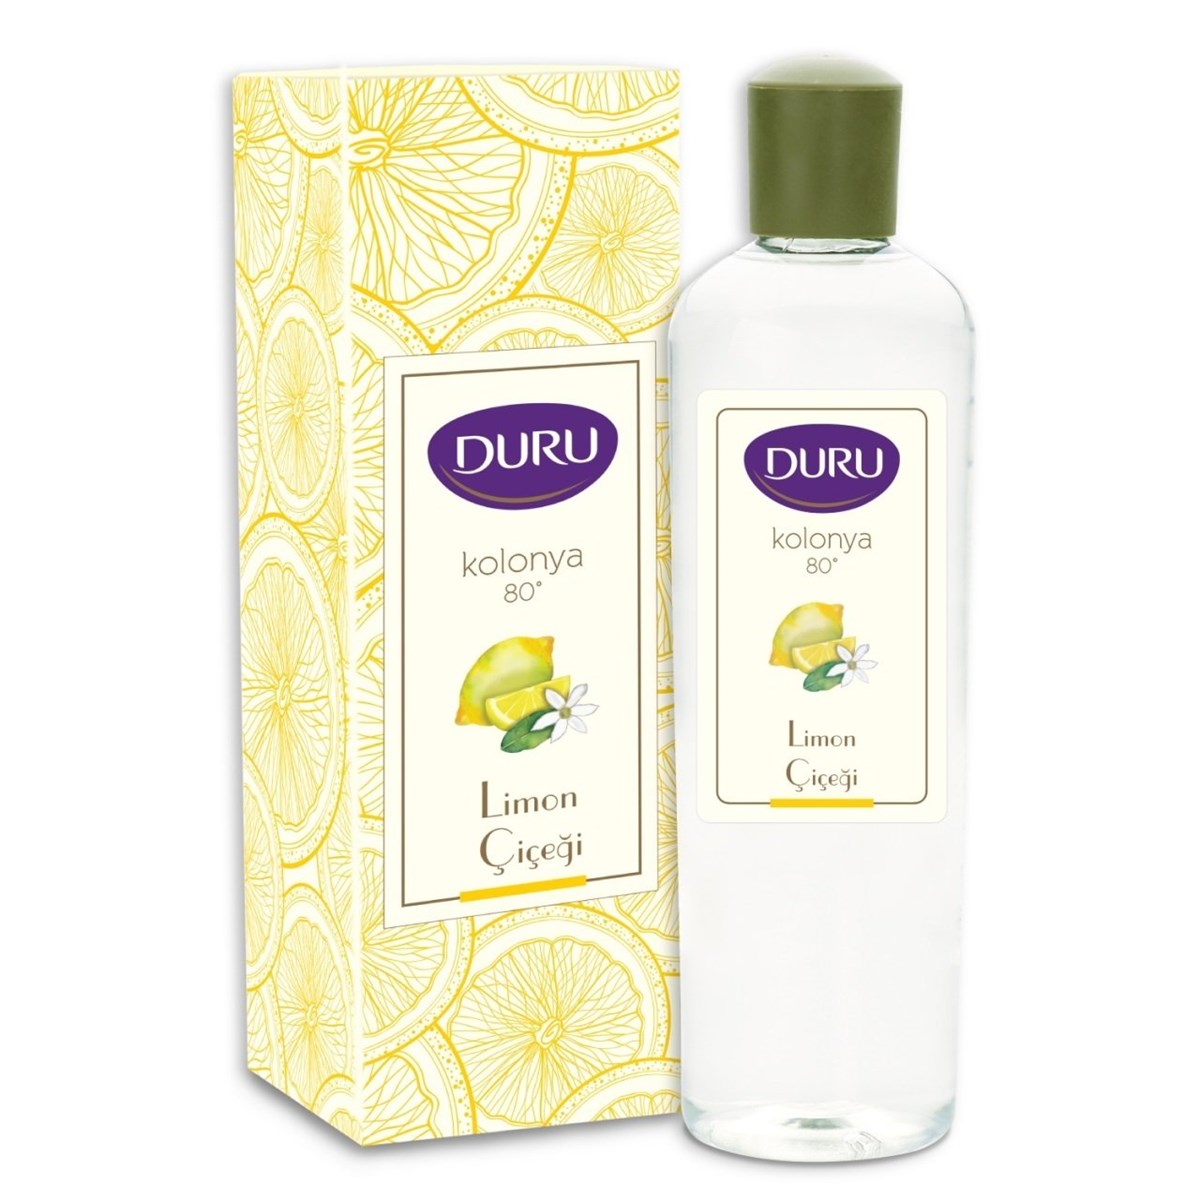 Duru Lemon Flower Cologne 80 400ml